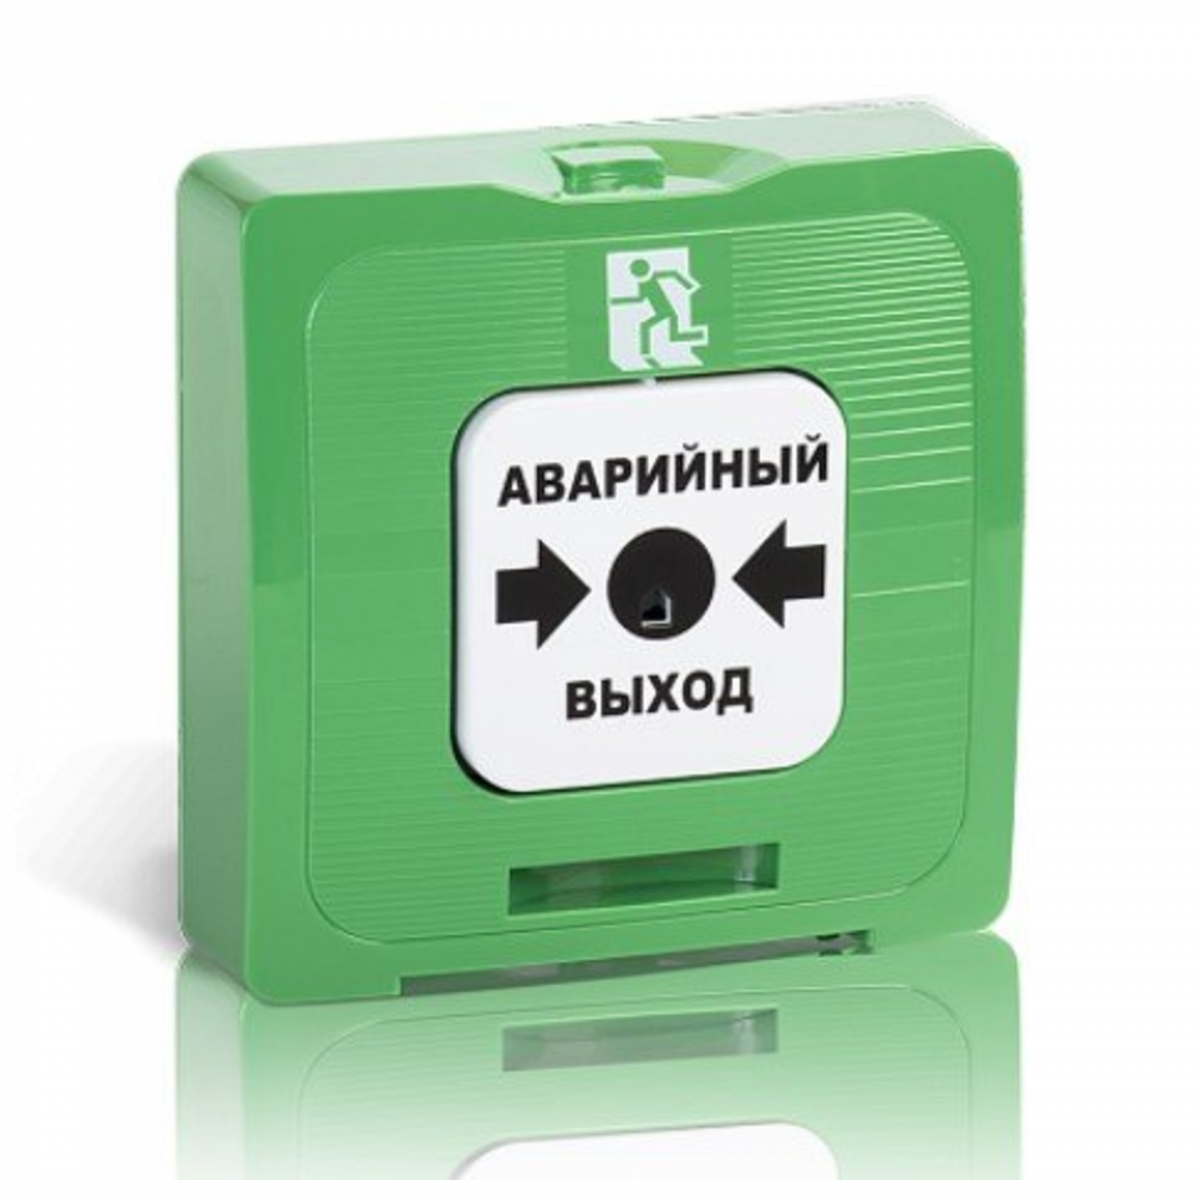 Кнопка АВАРИЙНЫЙ ВЫХОД ИР 513-10 (цвет зелёный)